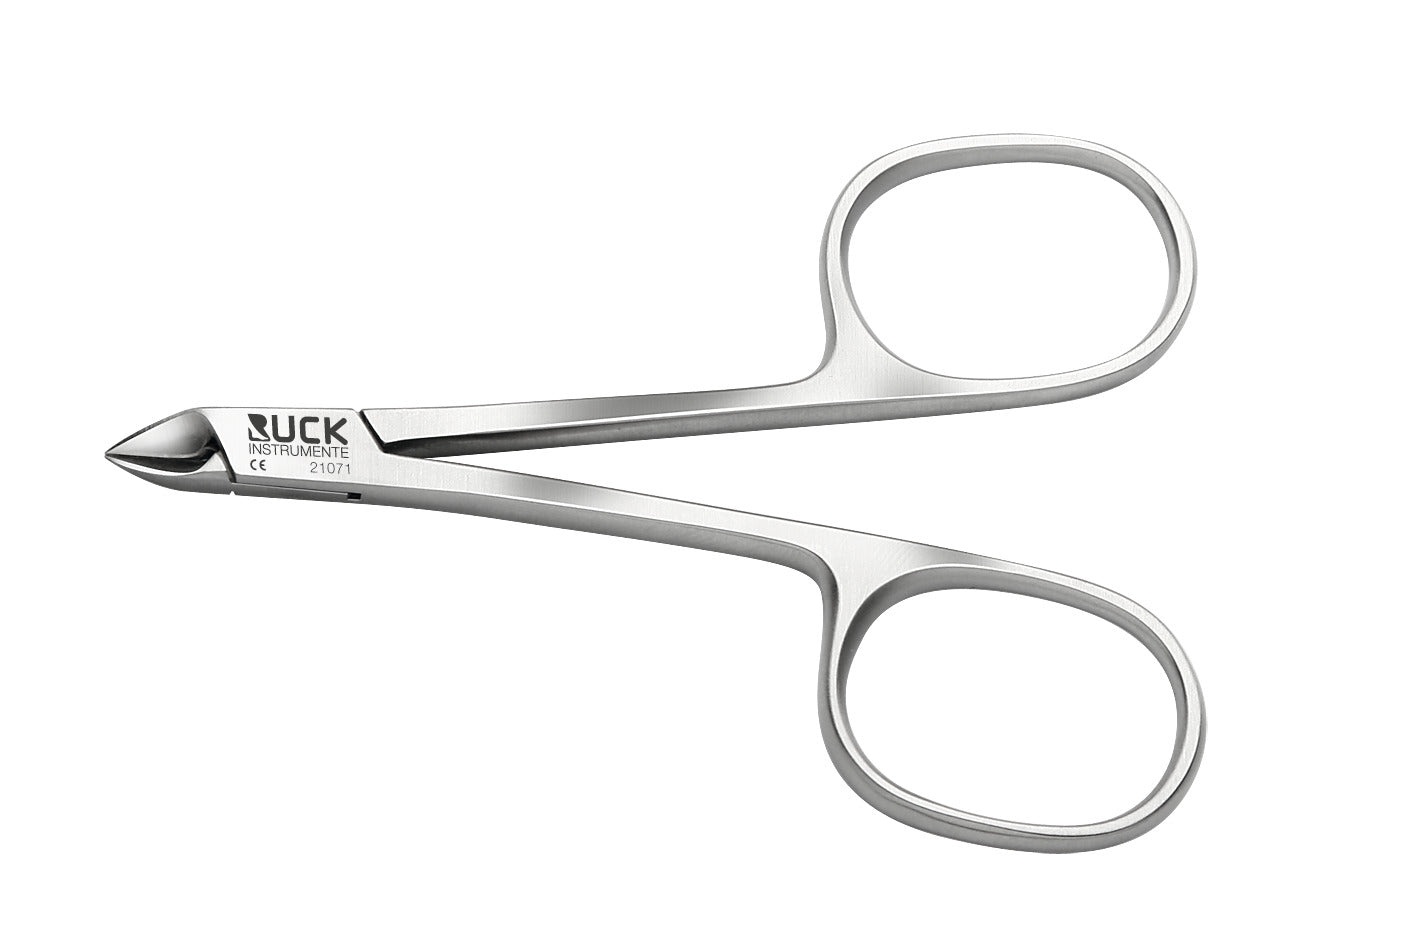 Ciseaux à envie coupe droite - Longueur : 8,5 cm - Tranchant : 8 mm - Ruck